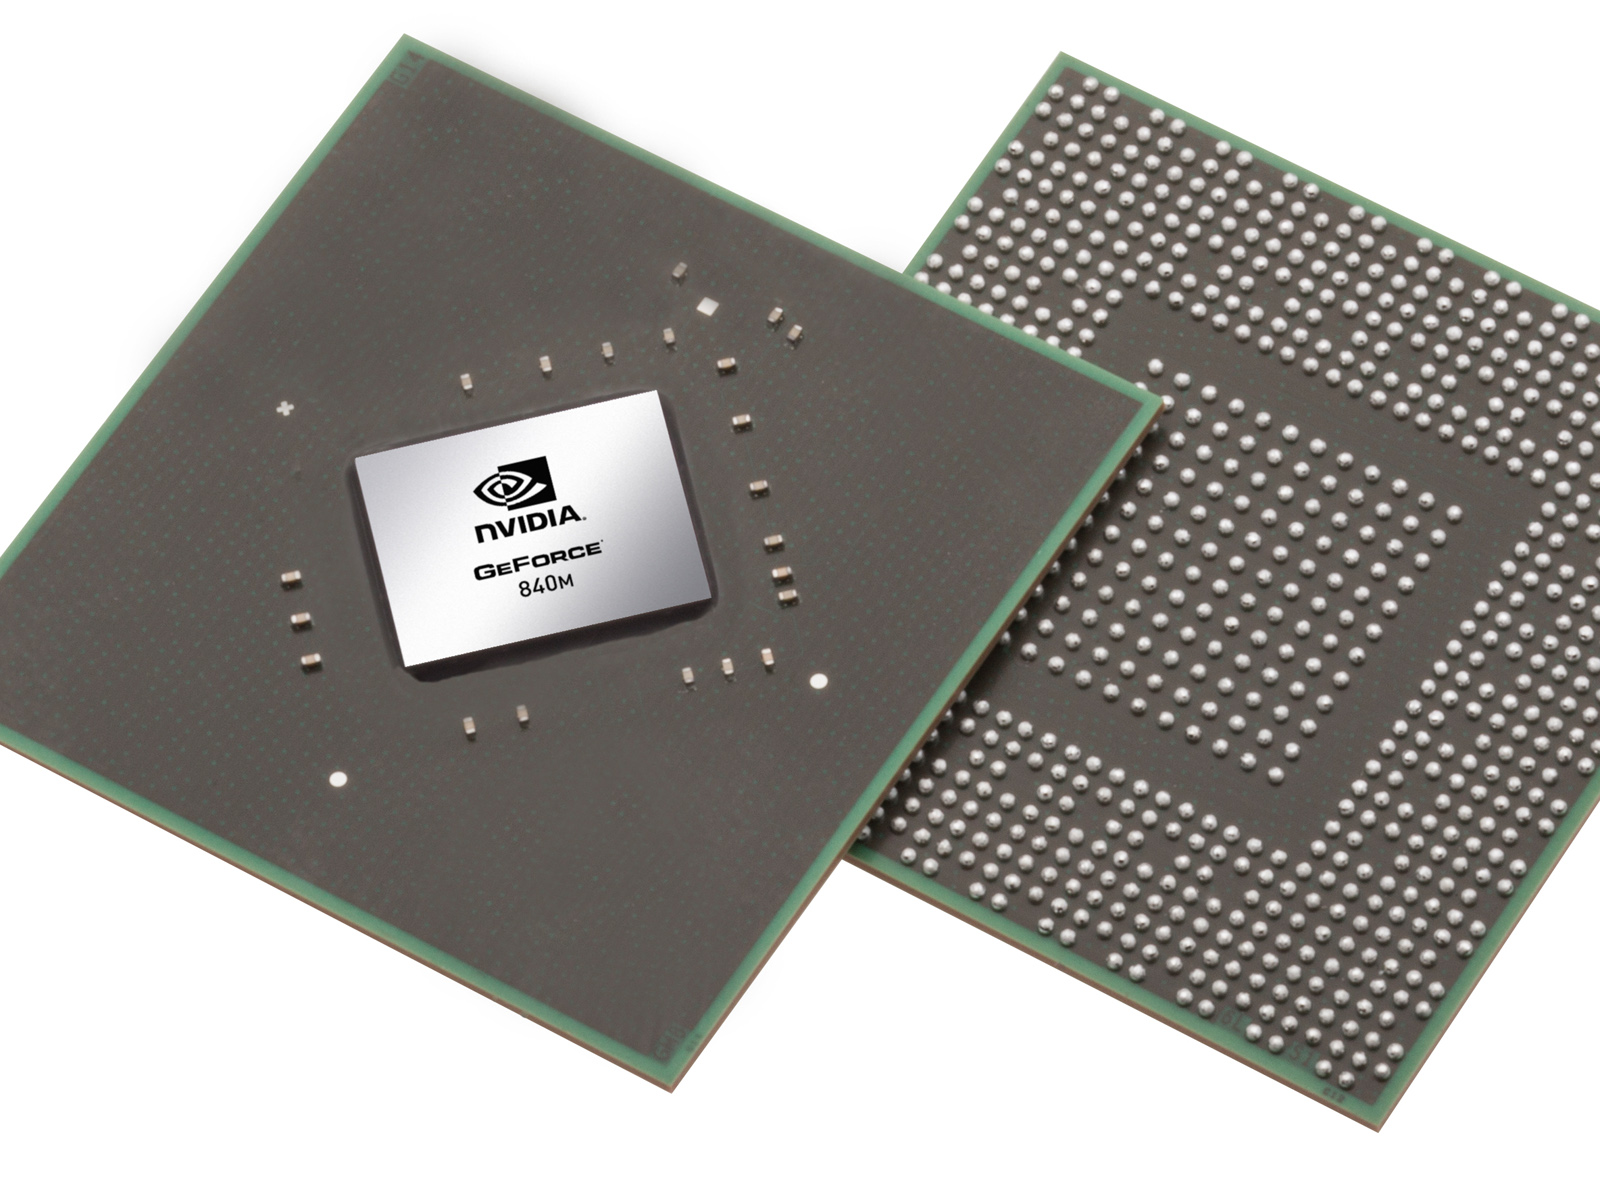 Nvidia Geforce 840m Notebookcheck Net Tech